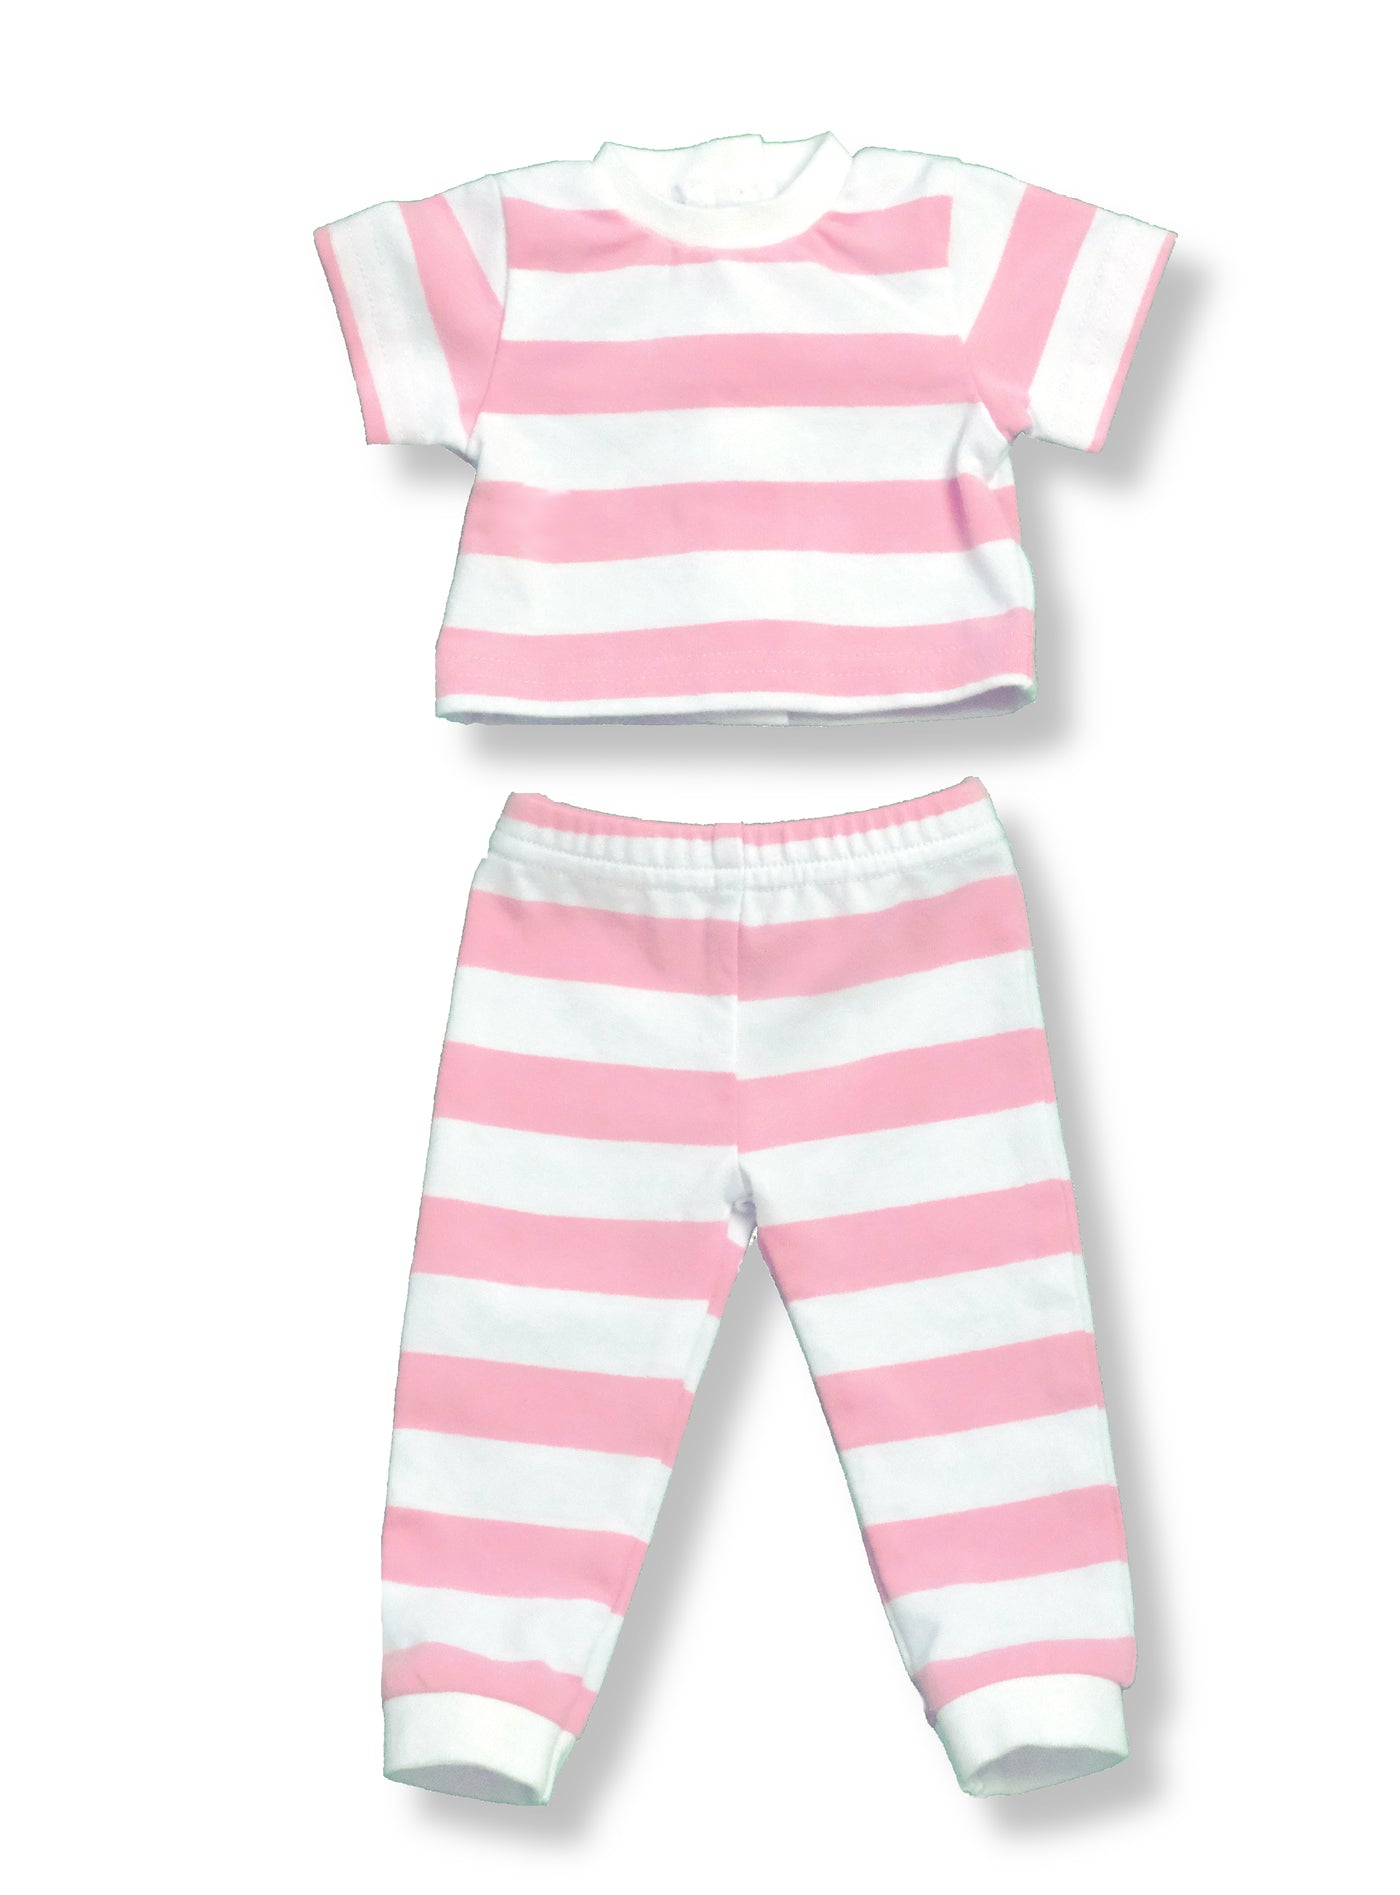 18" Doll Striped PJs - Pink